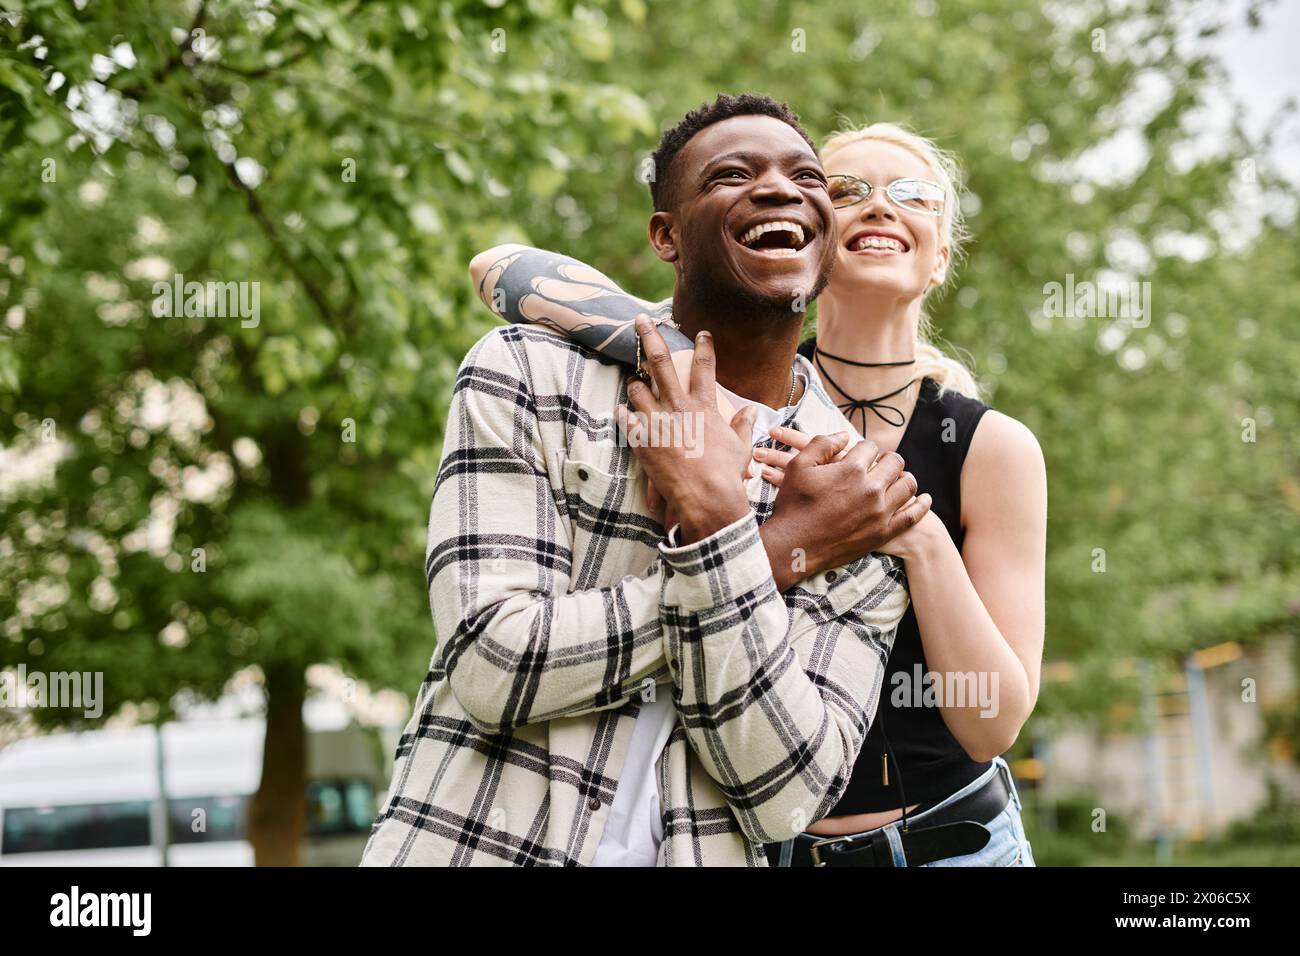 Un couple multiculturel heureux, un homme afro-américain tenant une femme caucasienne dans ses bras dehors dans un parc. Banque D'Images